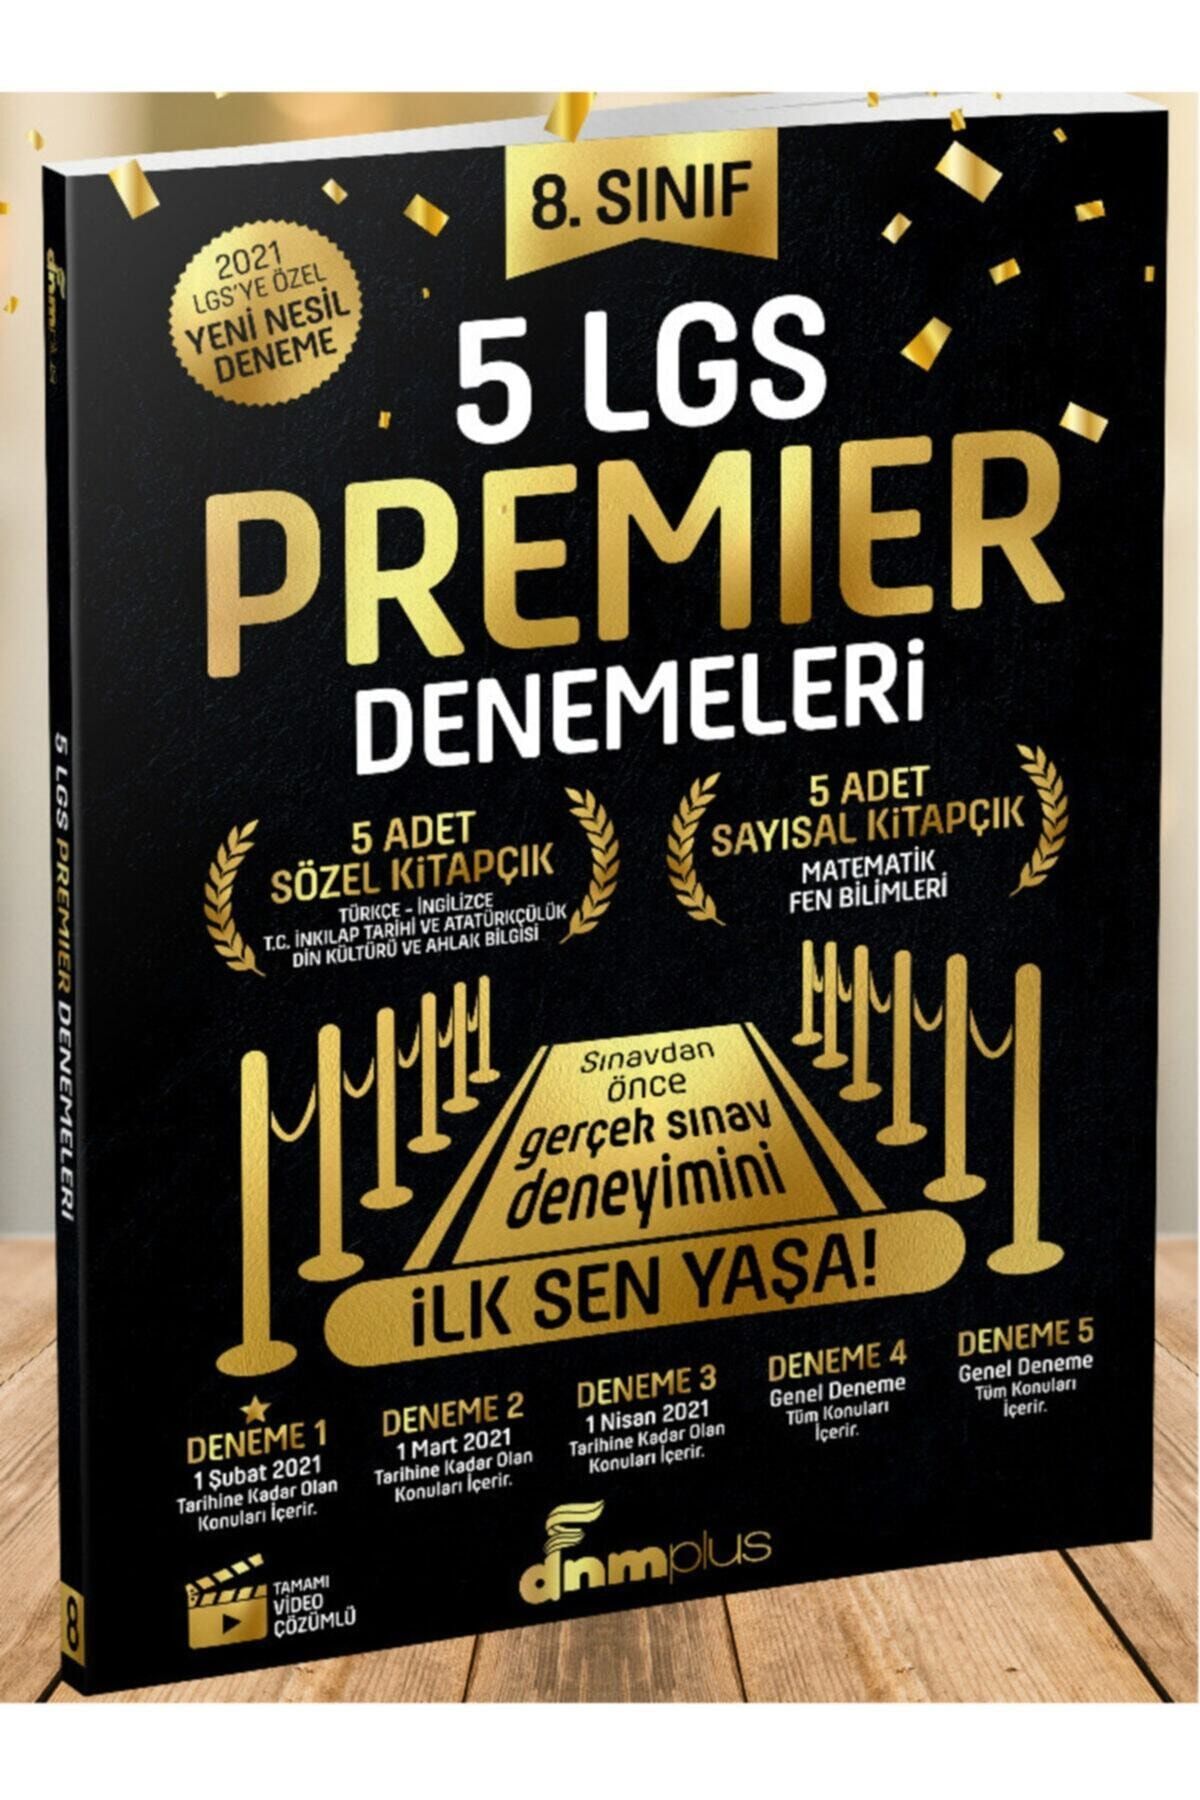 Arı Yayıncılık Dnm Plus 8.sınıf 5 Lgs Premier Denemeleri